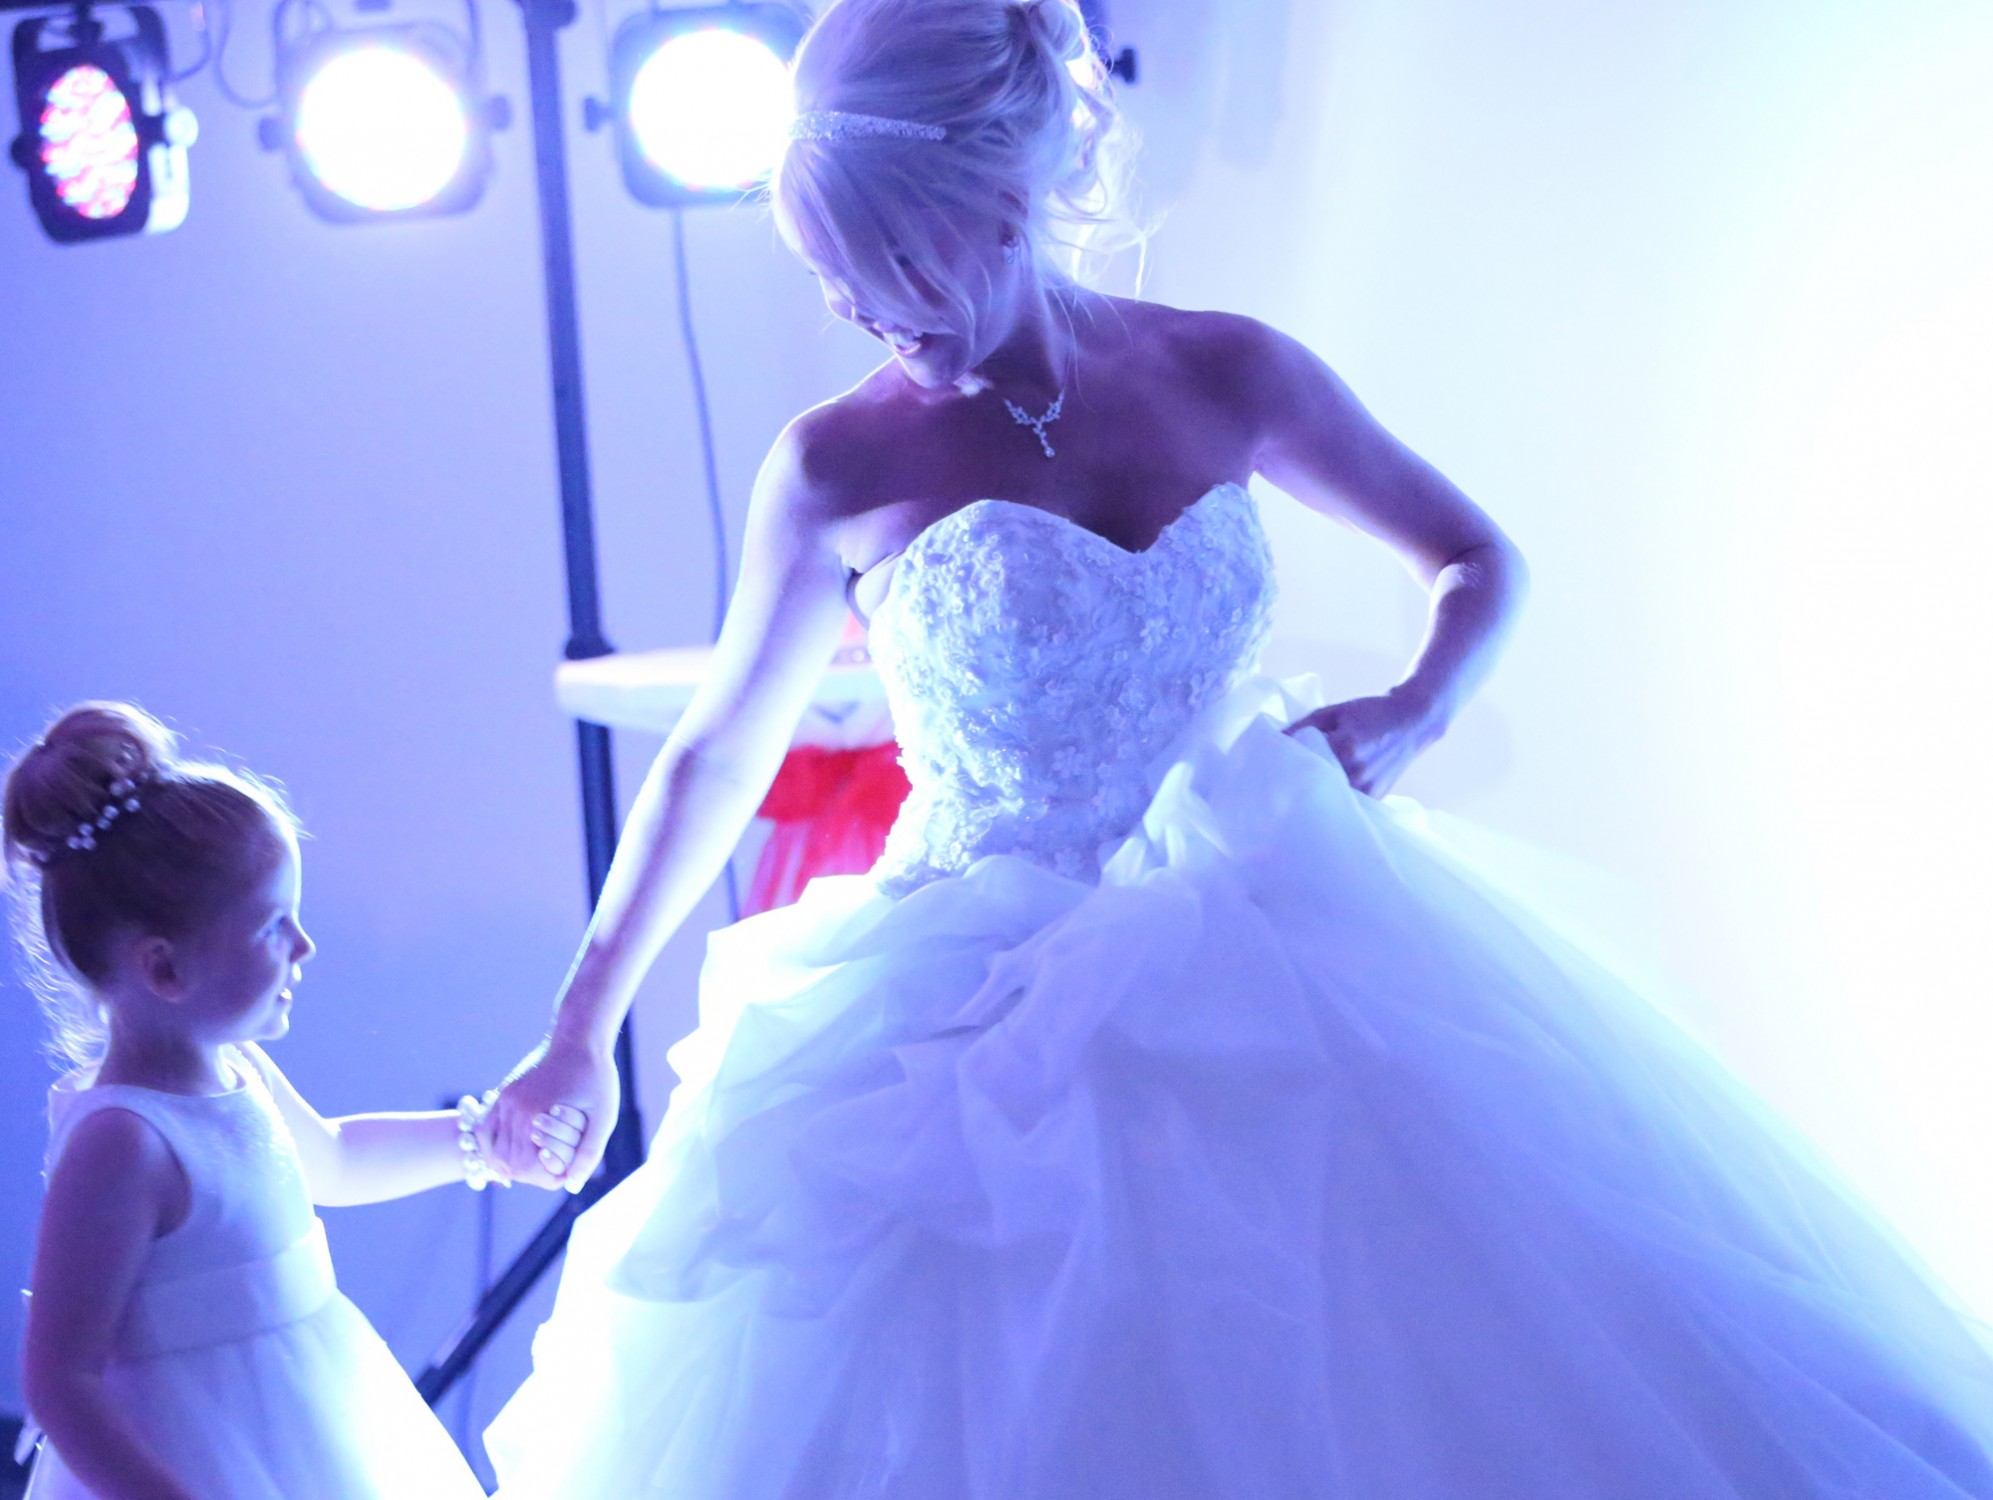 bride on dance floor with girl